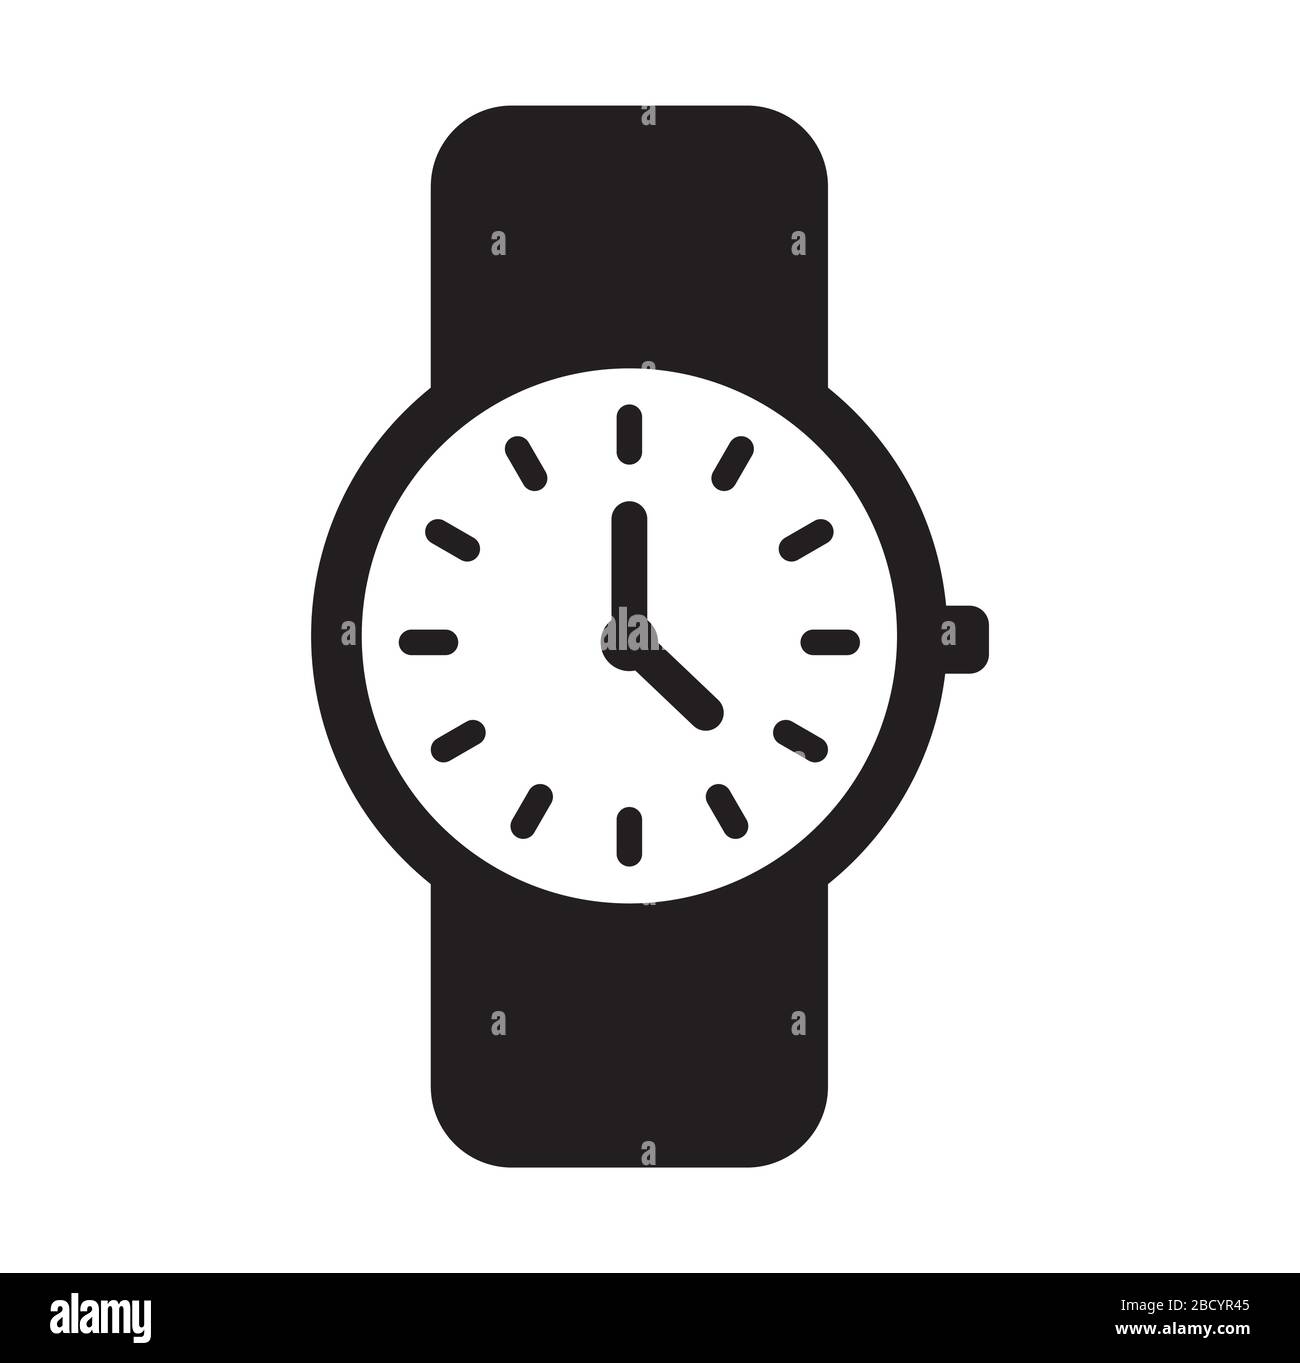 Symbol für Uhr/Armbanduhr Stock-Vektorgrafik - Alamy